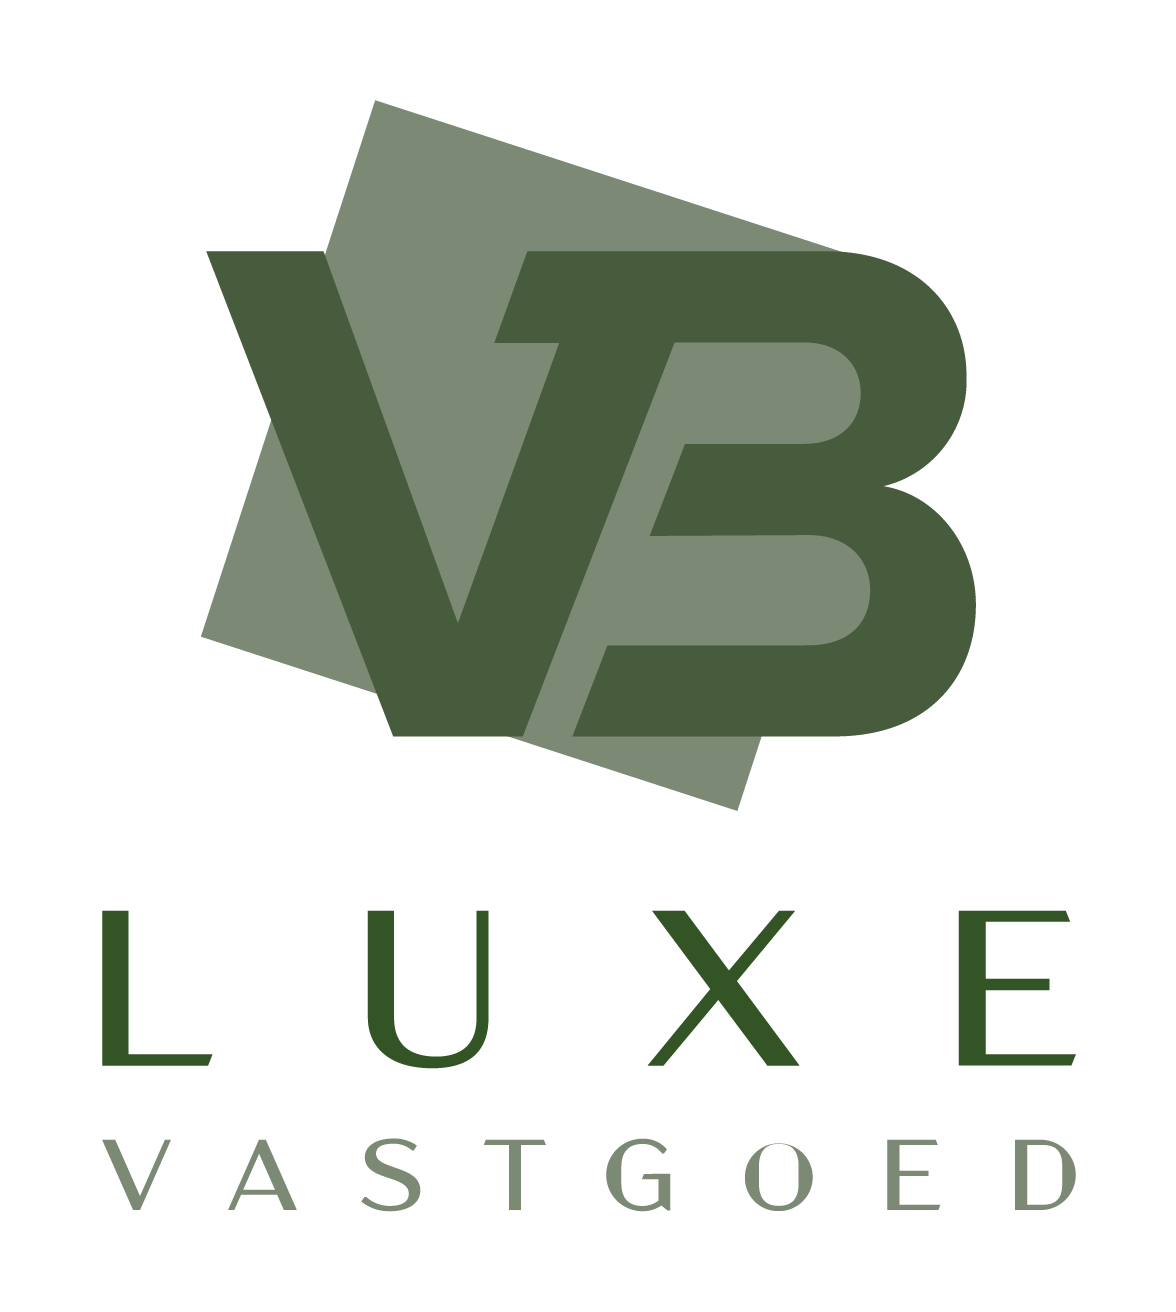 VB Luxe logo